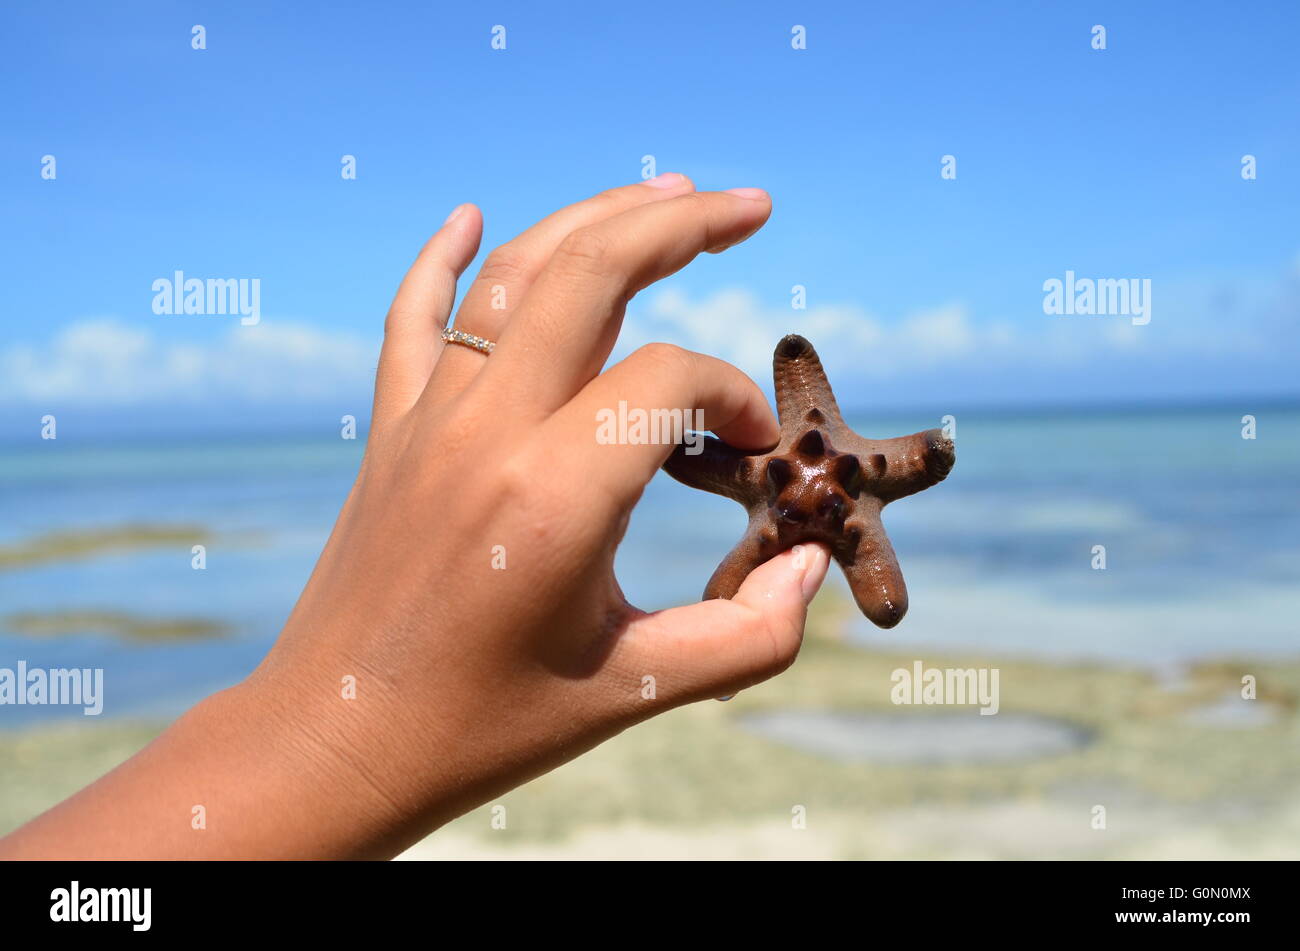 Une Main Tenant Un Bebe Etoile De Mer Dans L Air Sur Une Plage Tropicale Deserte Photo Stock Alamy